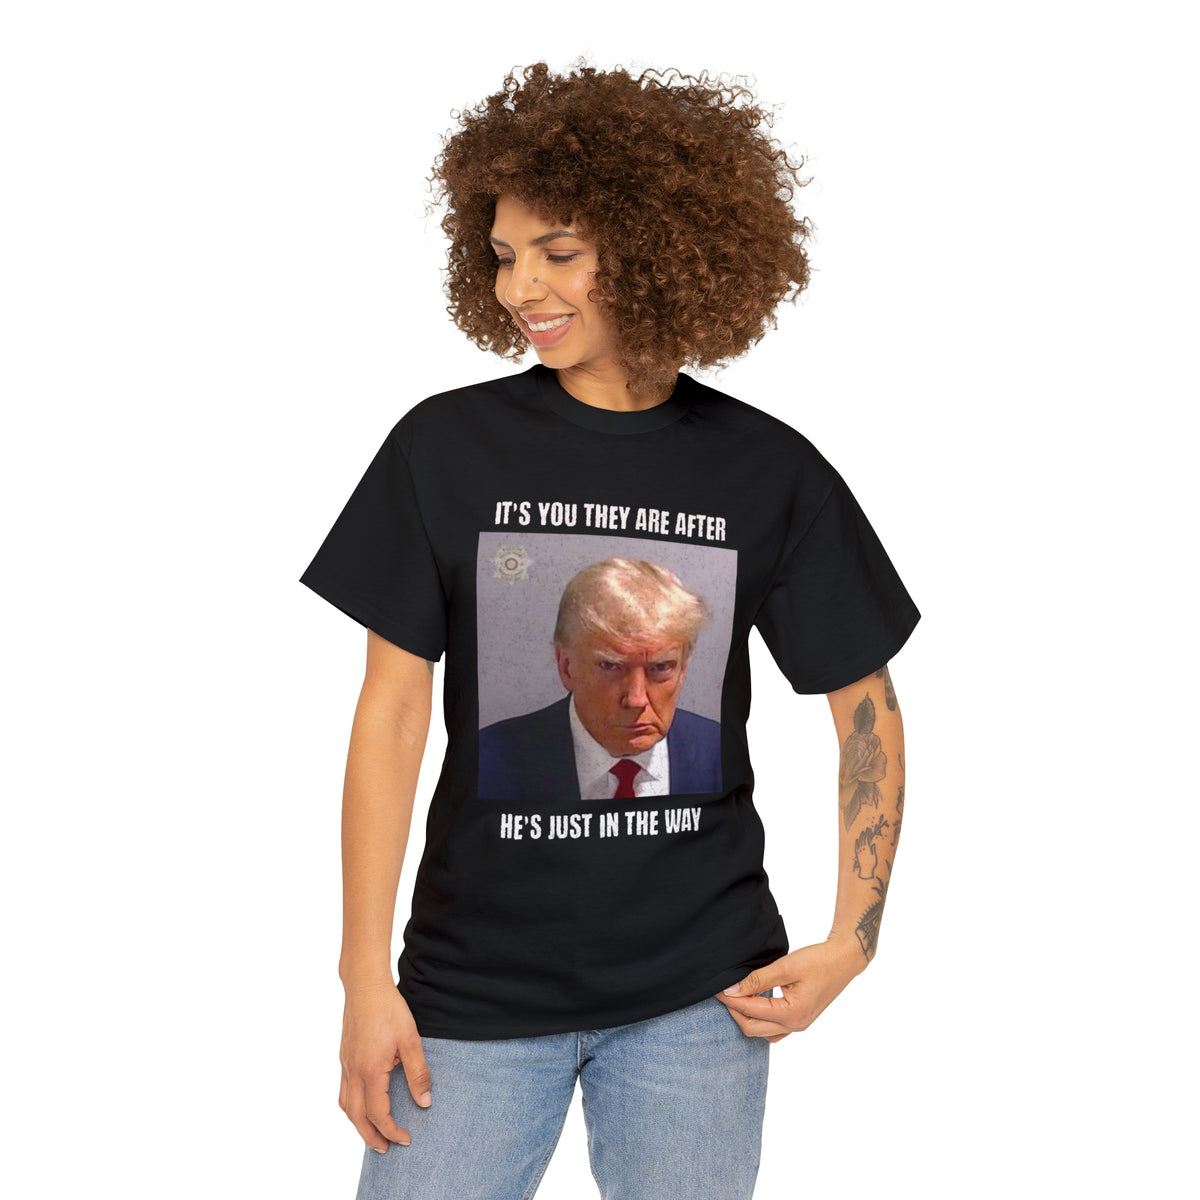 Trump Mug Shot T-Shirt